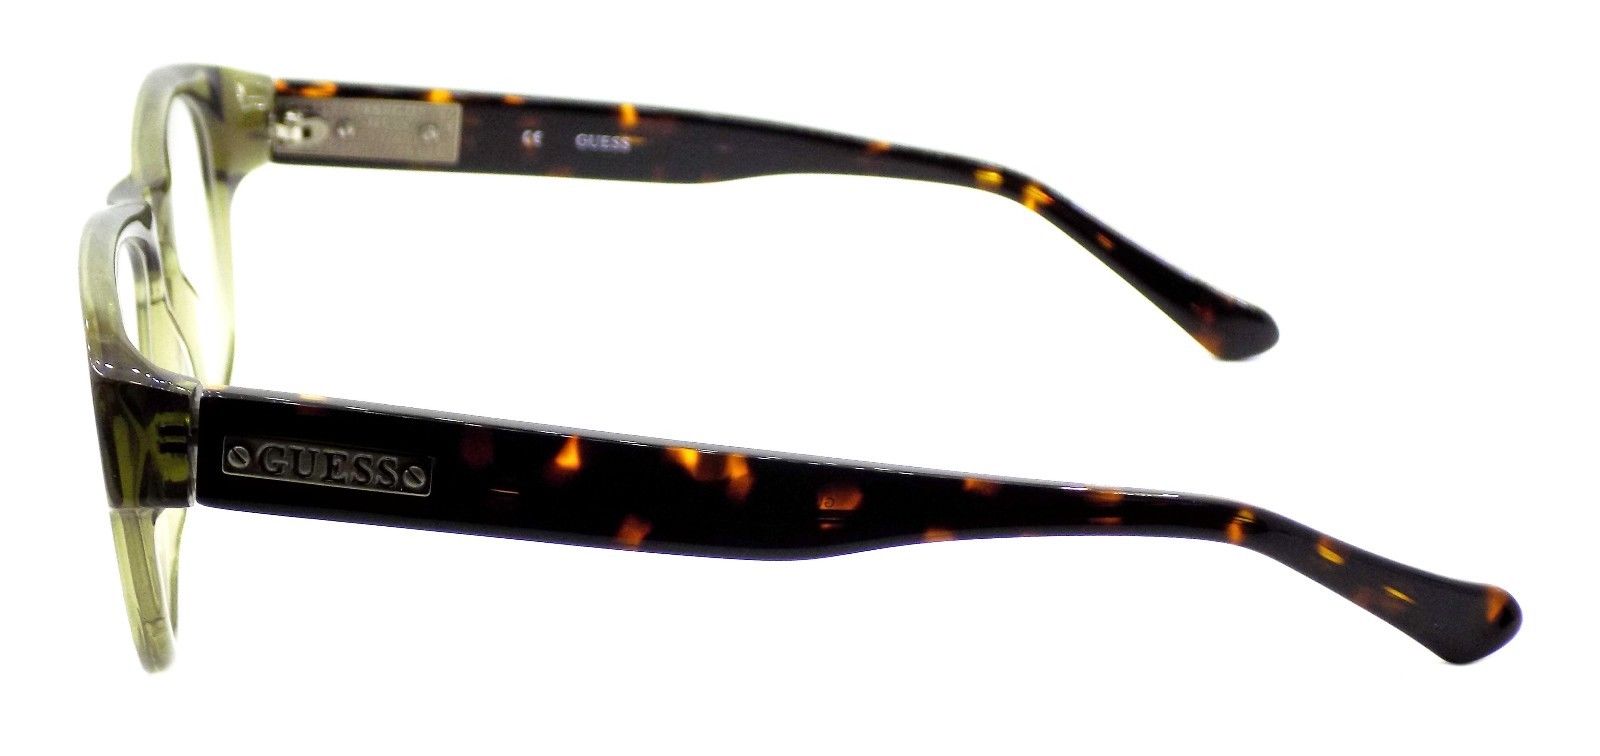 3-GUESS GU1753 OLTO Men's Eyeglasses Frames 53-16-140 Olive Tortoise + CASE-715583550636-IKSpecs